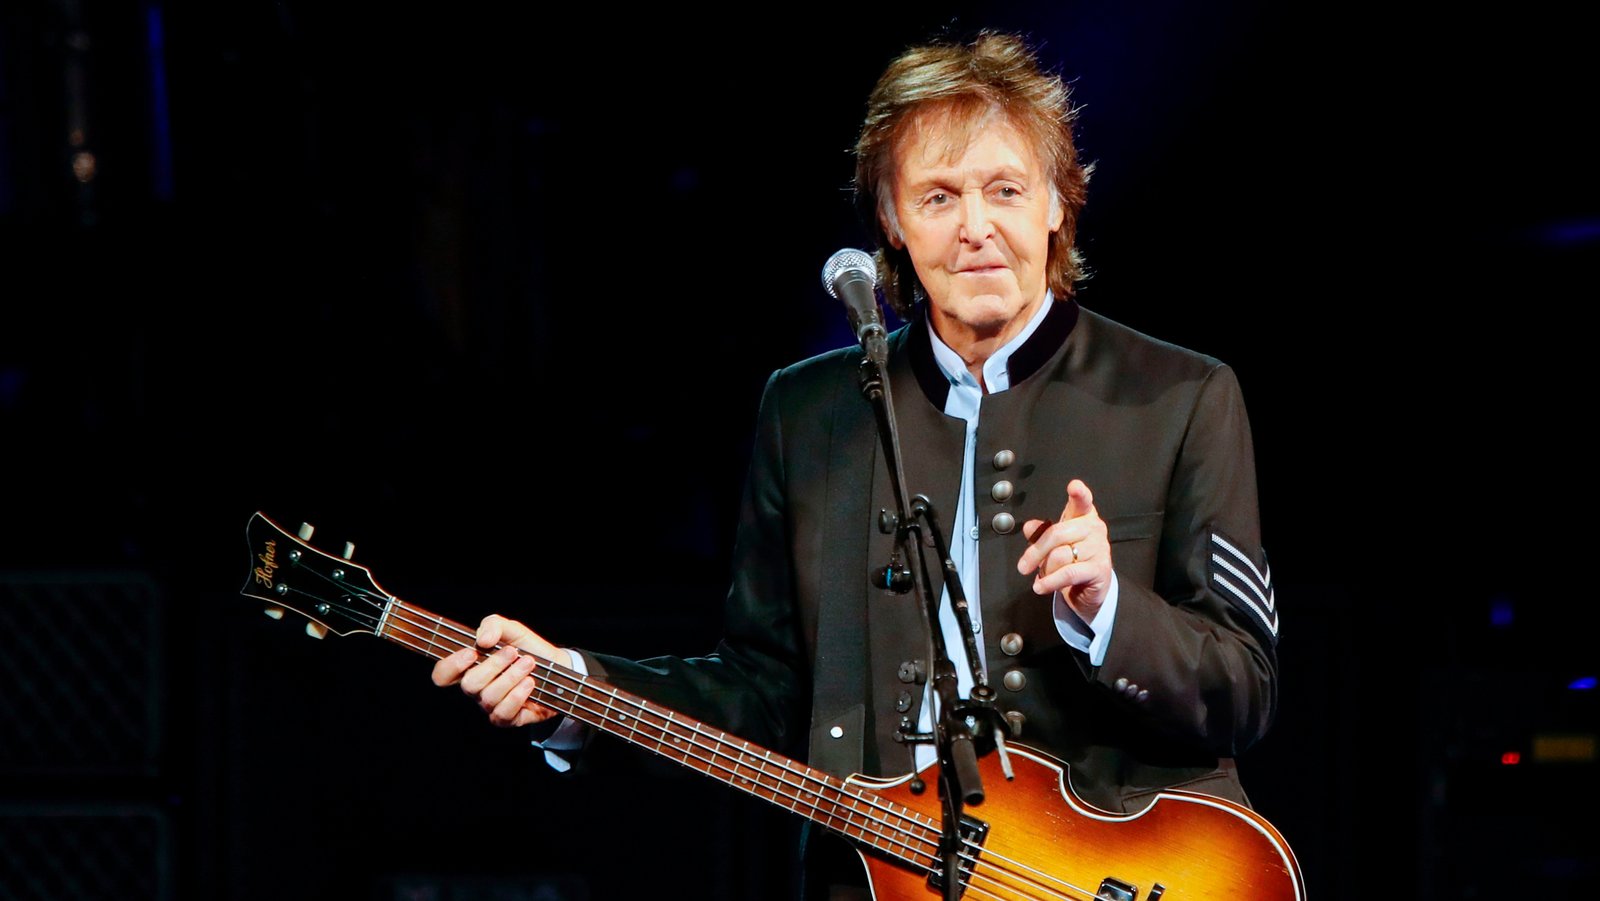  Paul McCartney agiganta aún más su leyenda con un nuevo disco de estudio realizado en absoluta soledad durante el confinamiento social obligado por la pandemia de coronavirus.